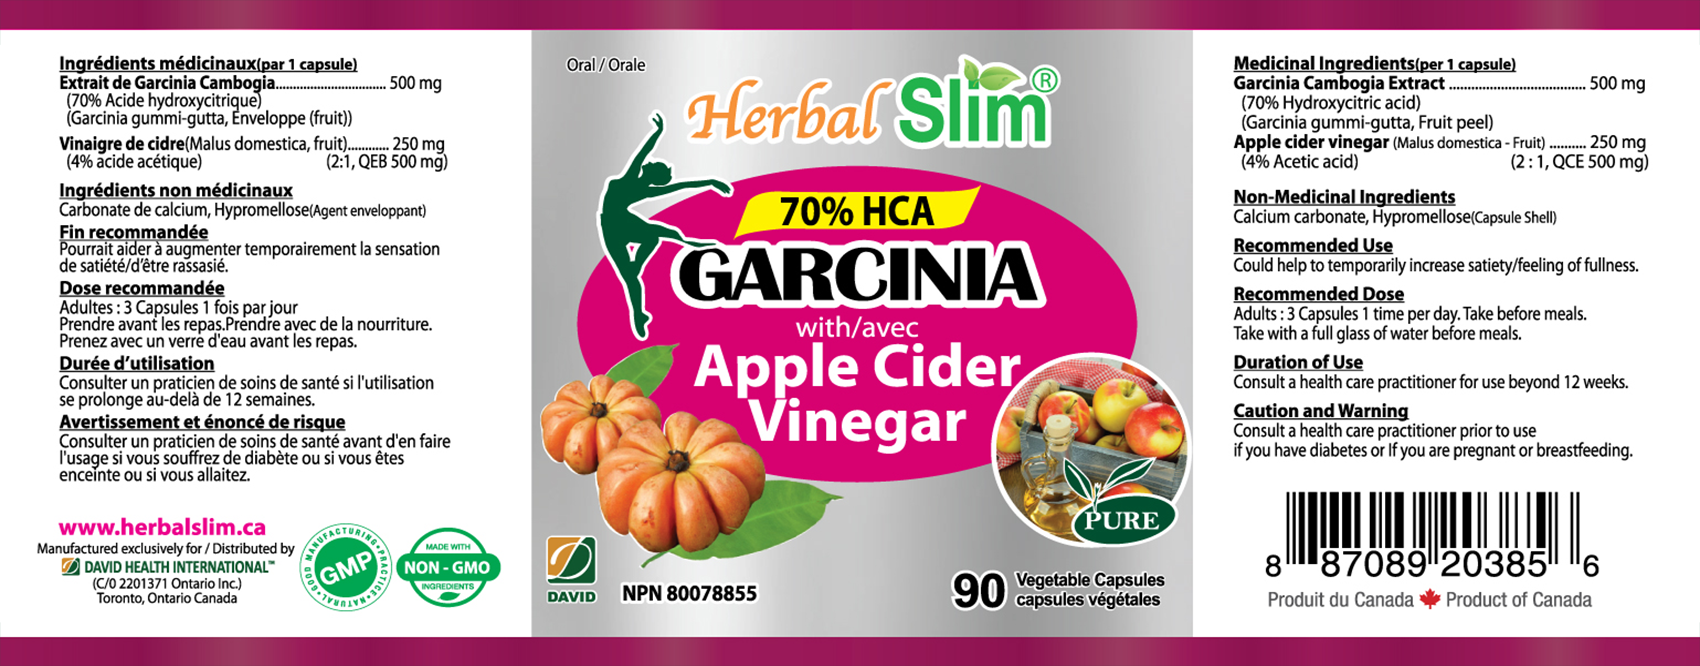 HerbalSlim GARCINIA with Apple cider VIinegar